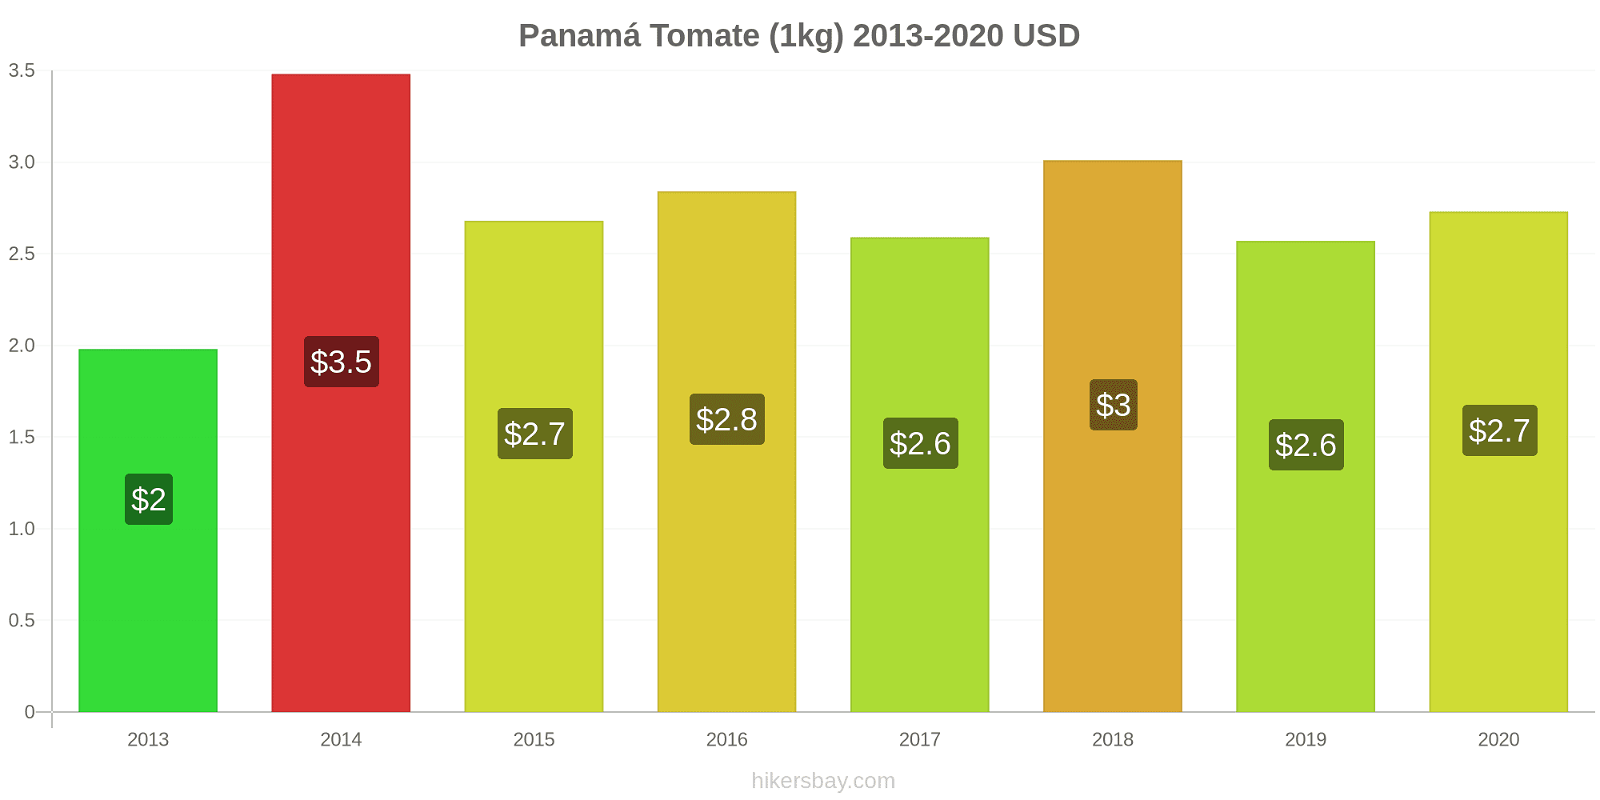 Panamá variação de preço Tomate (1kg) hikersbay.com